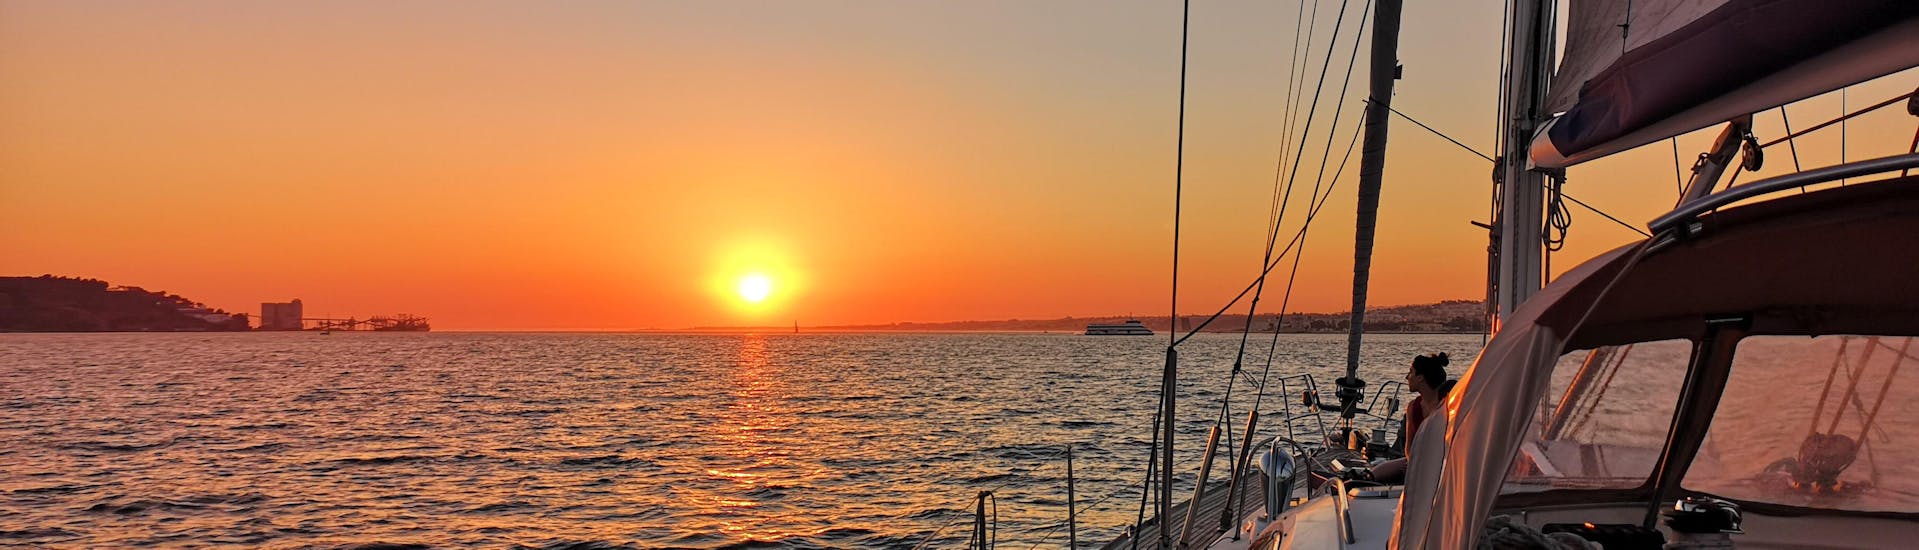 Contemplar la puesta de sol durante el paseo en velero por el Tajo